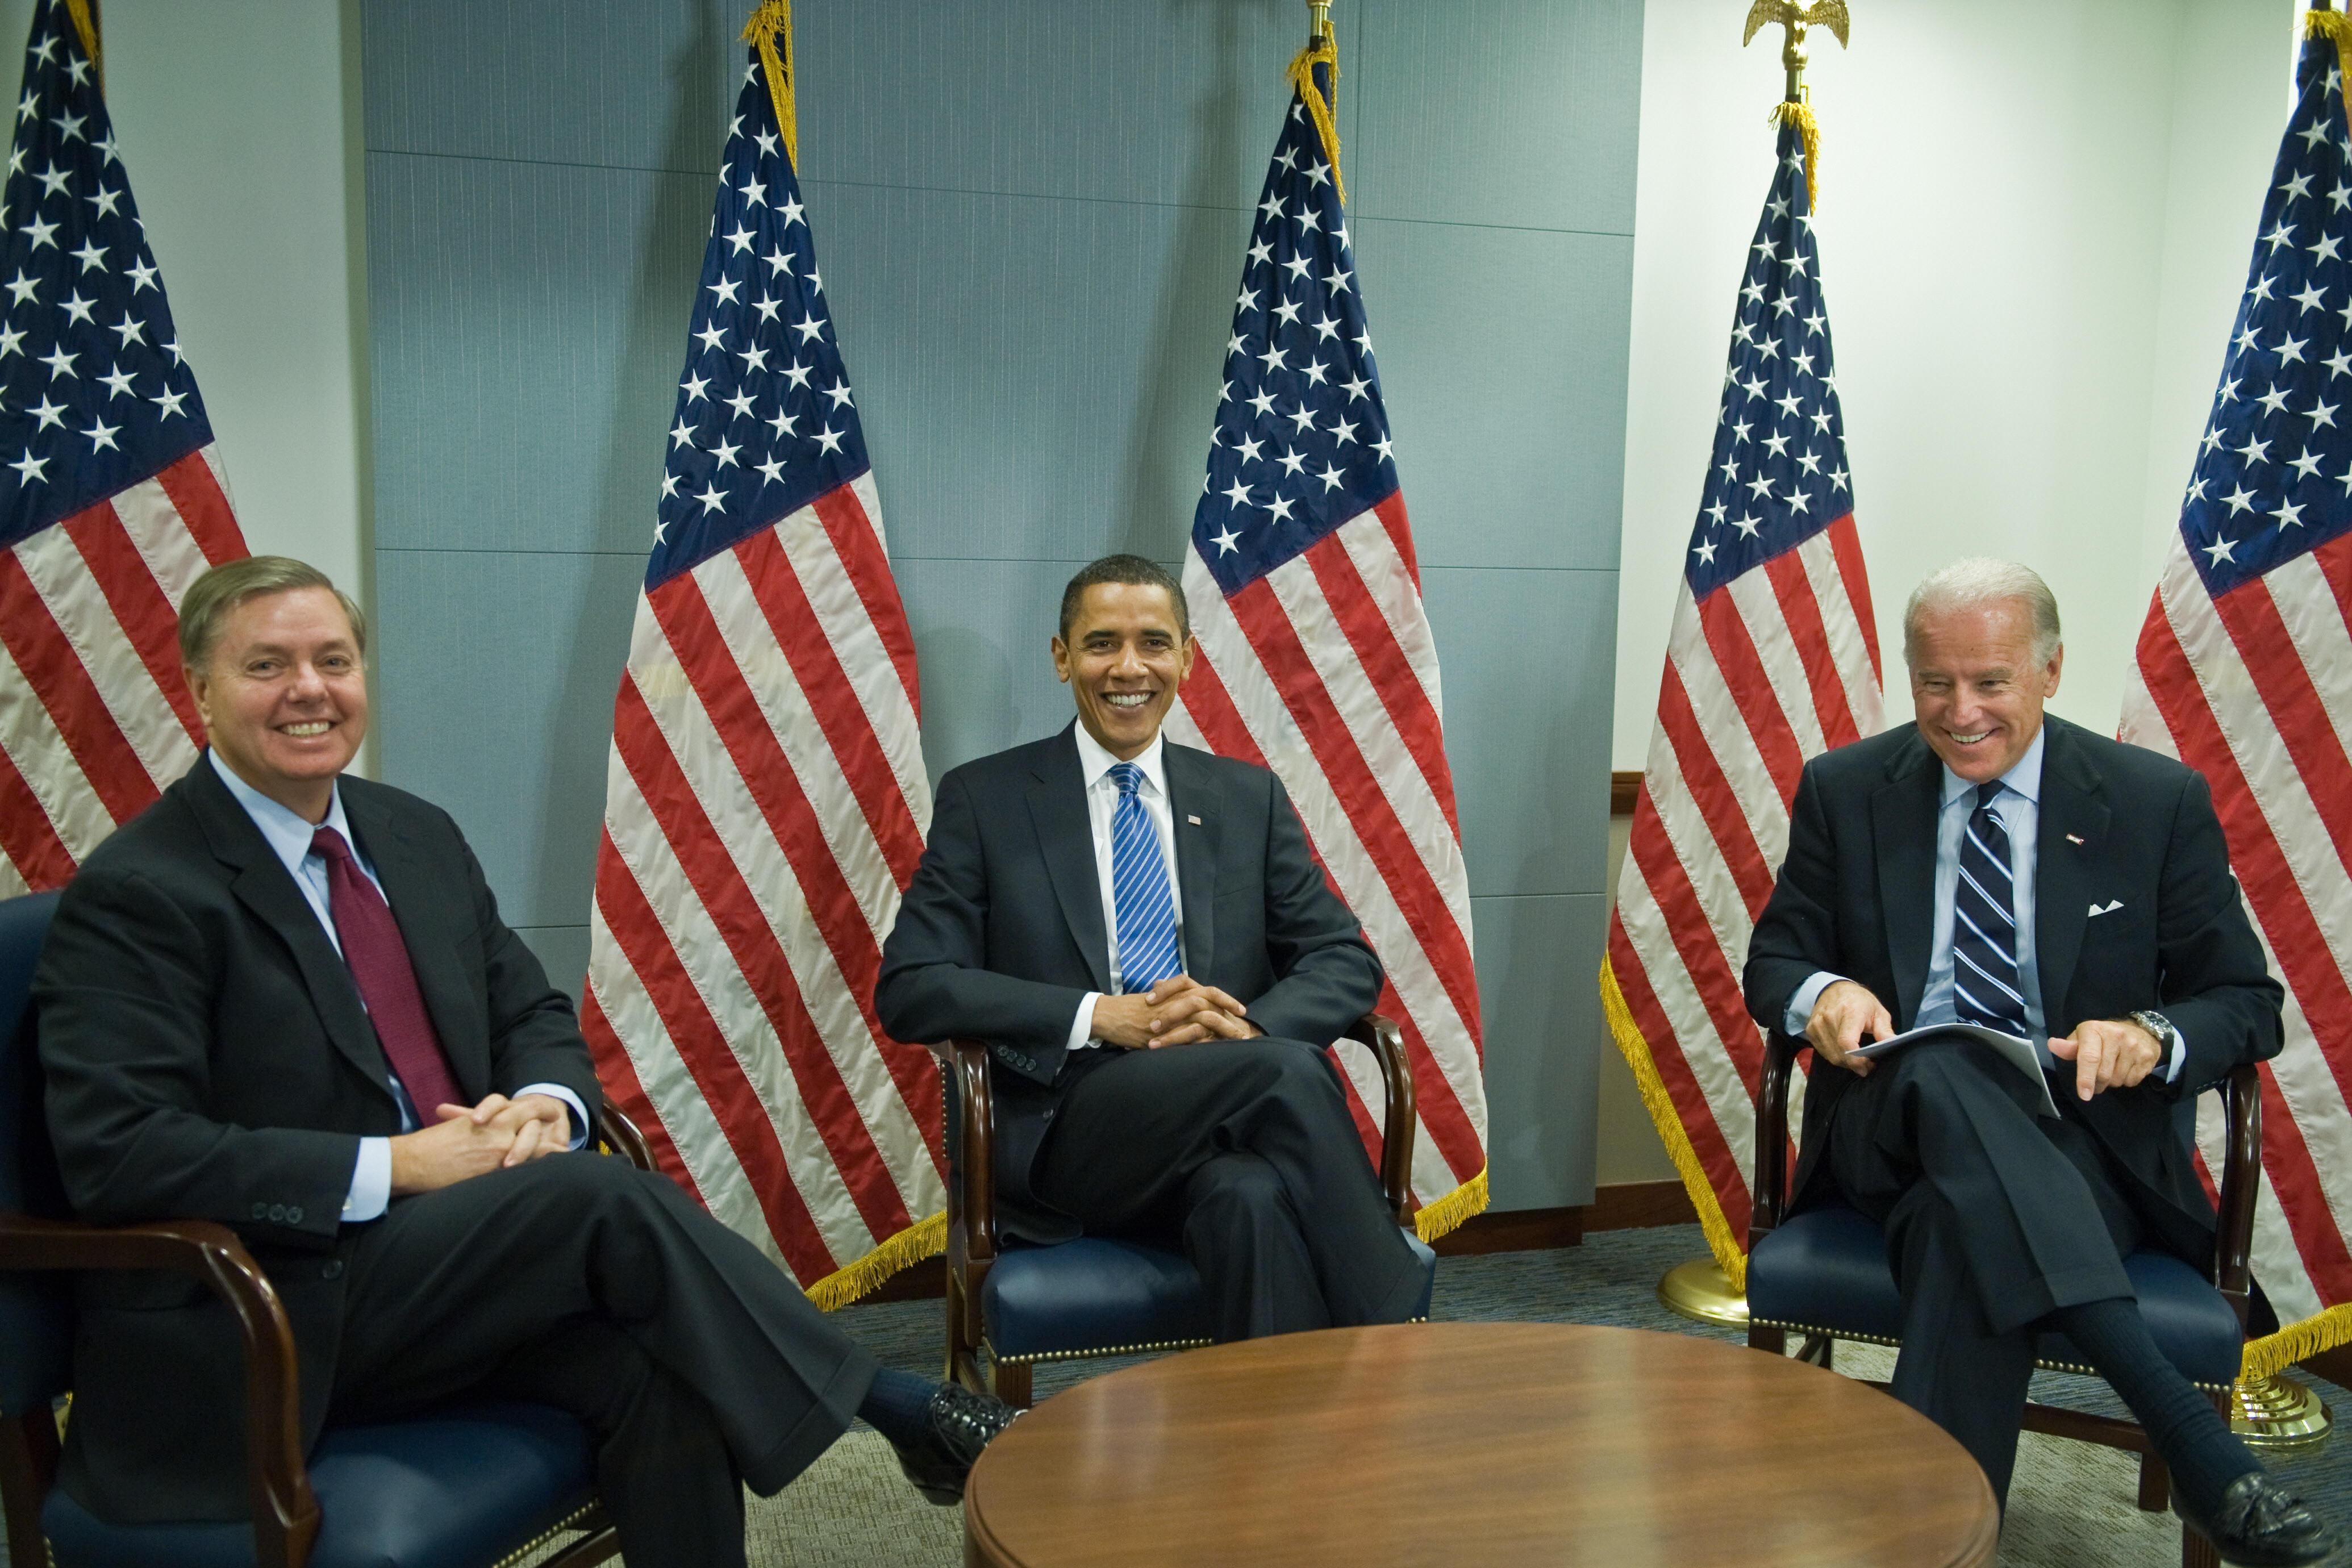 Lindsey Graham, Barack Obama, and Joe Biden in Jan. 2009.